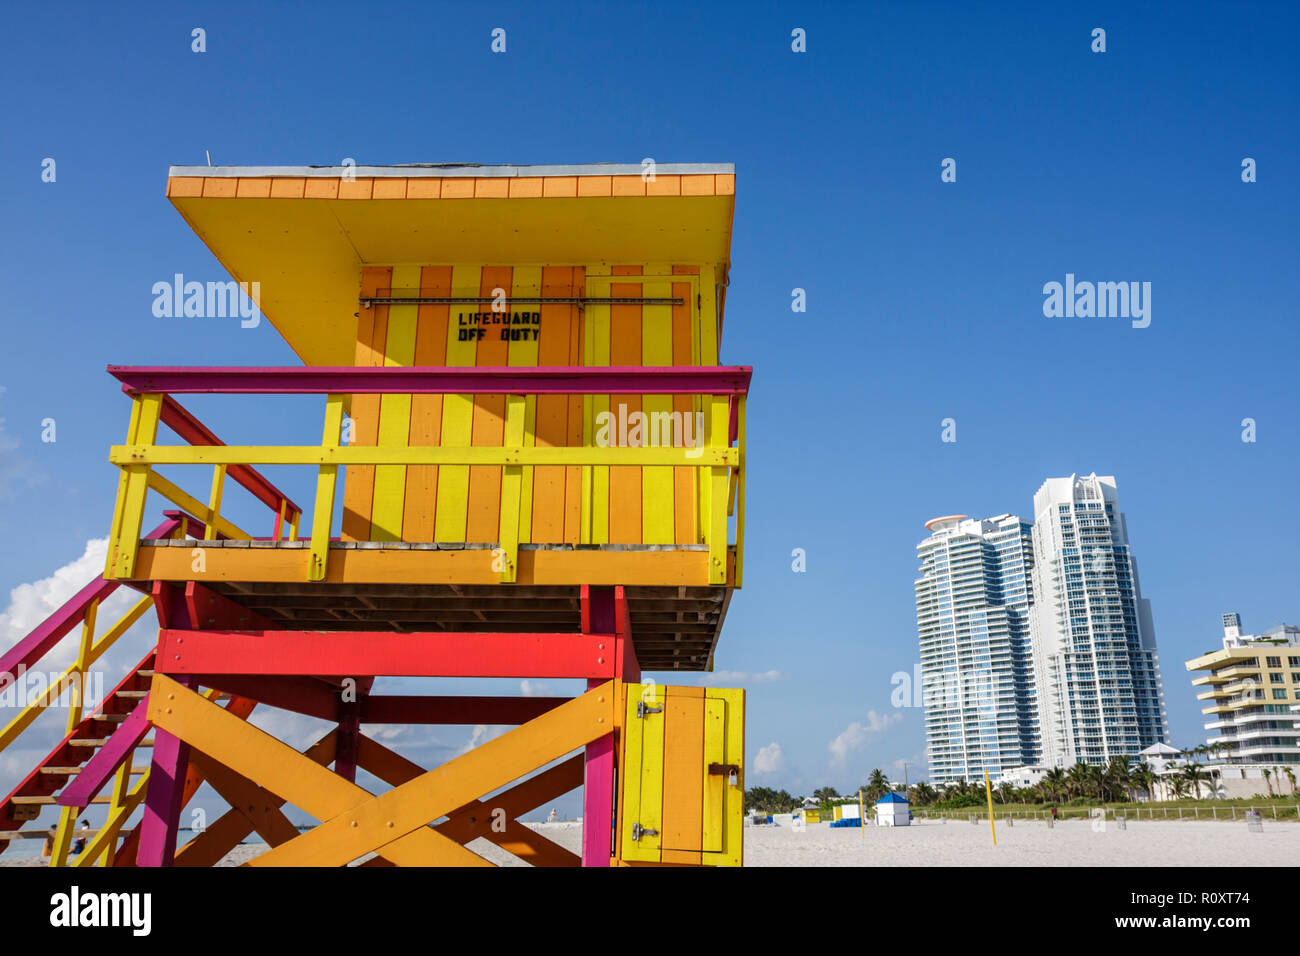 Miami Beach Florida, plage publique, sable, rivage, stand de sauveteurs, tour, hors service, bande, couleur vive, orange, jaune, panneau, bâtiment, gratte-ciel gratte-ciel Banque D'Images